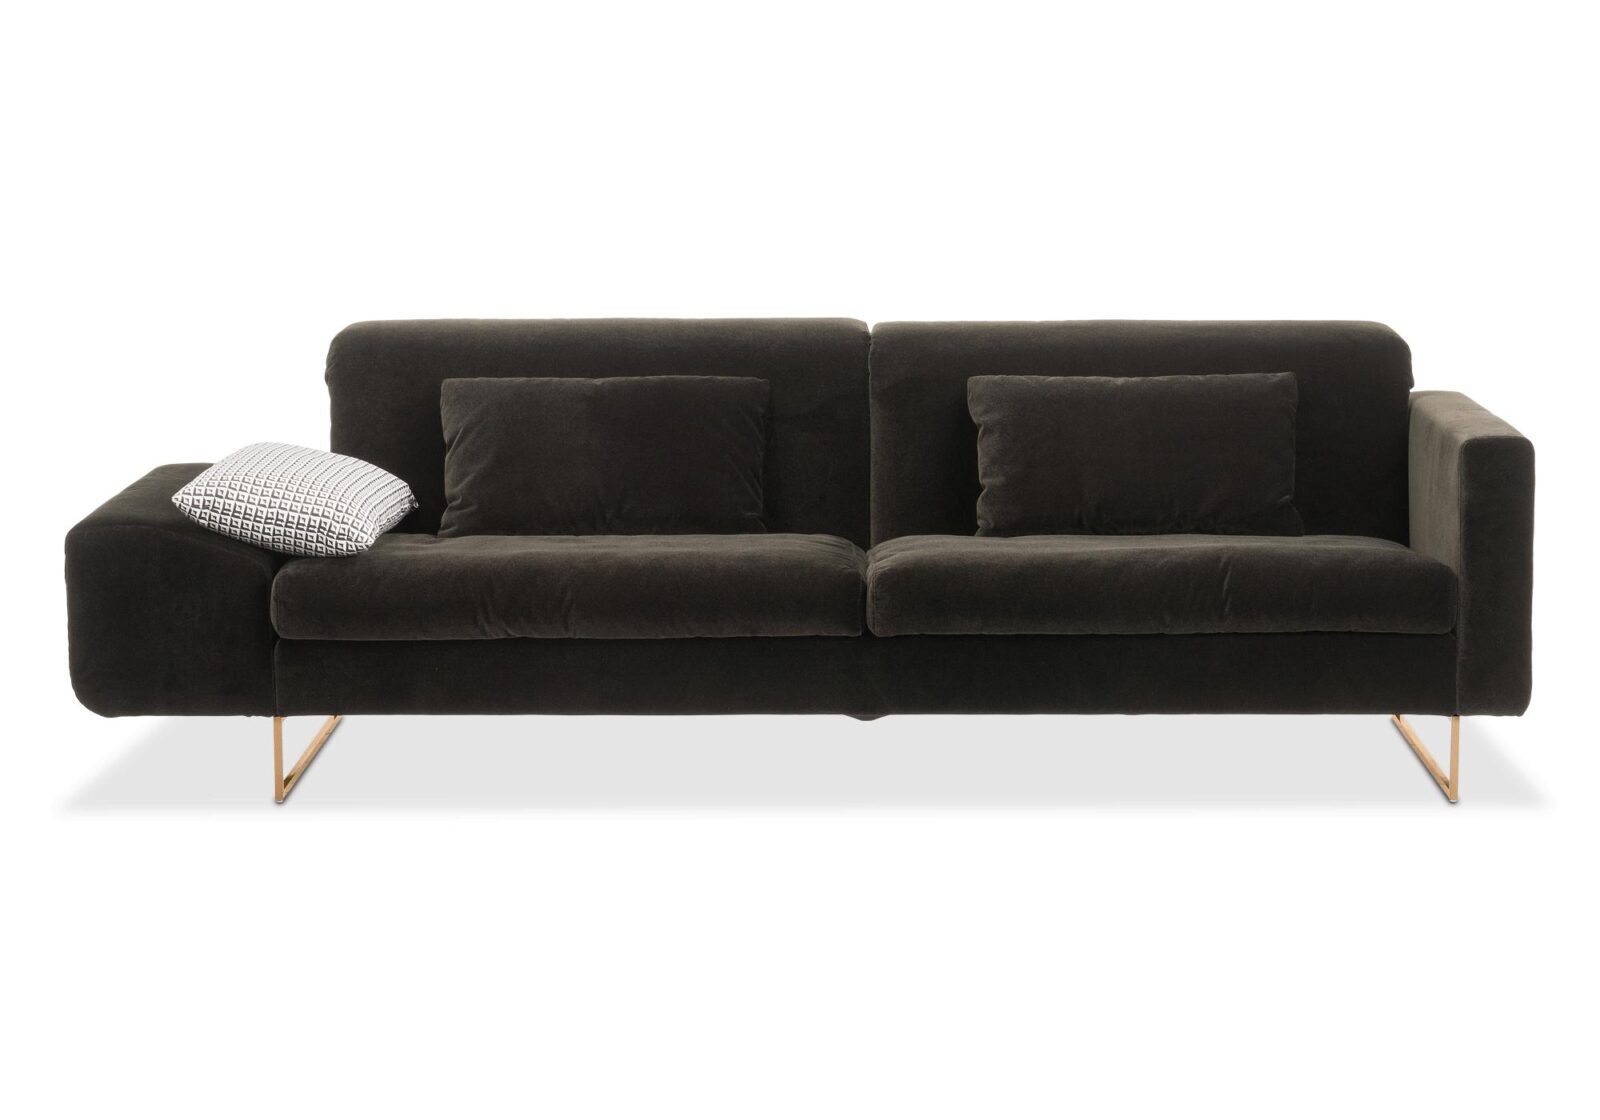 4er Sofa Embrace in Leder oder Stoff. Bezug: Stoff. Farbe: Braun. Erhältlich bei Möbel Gallati.